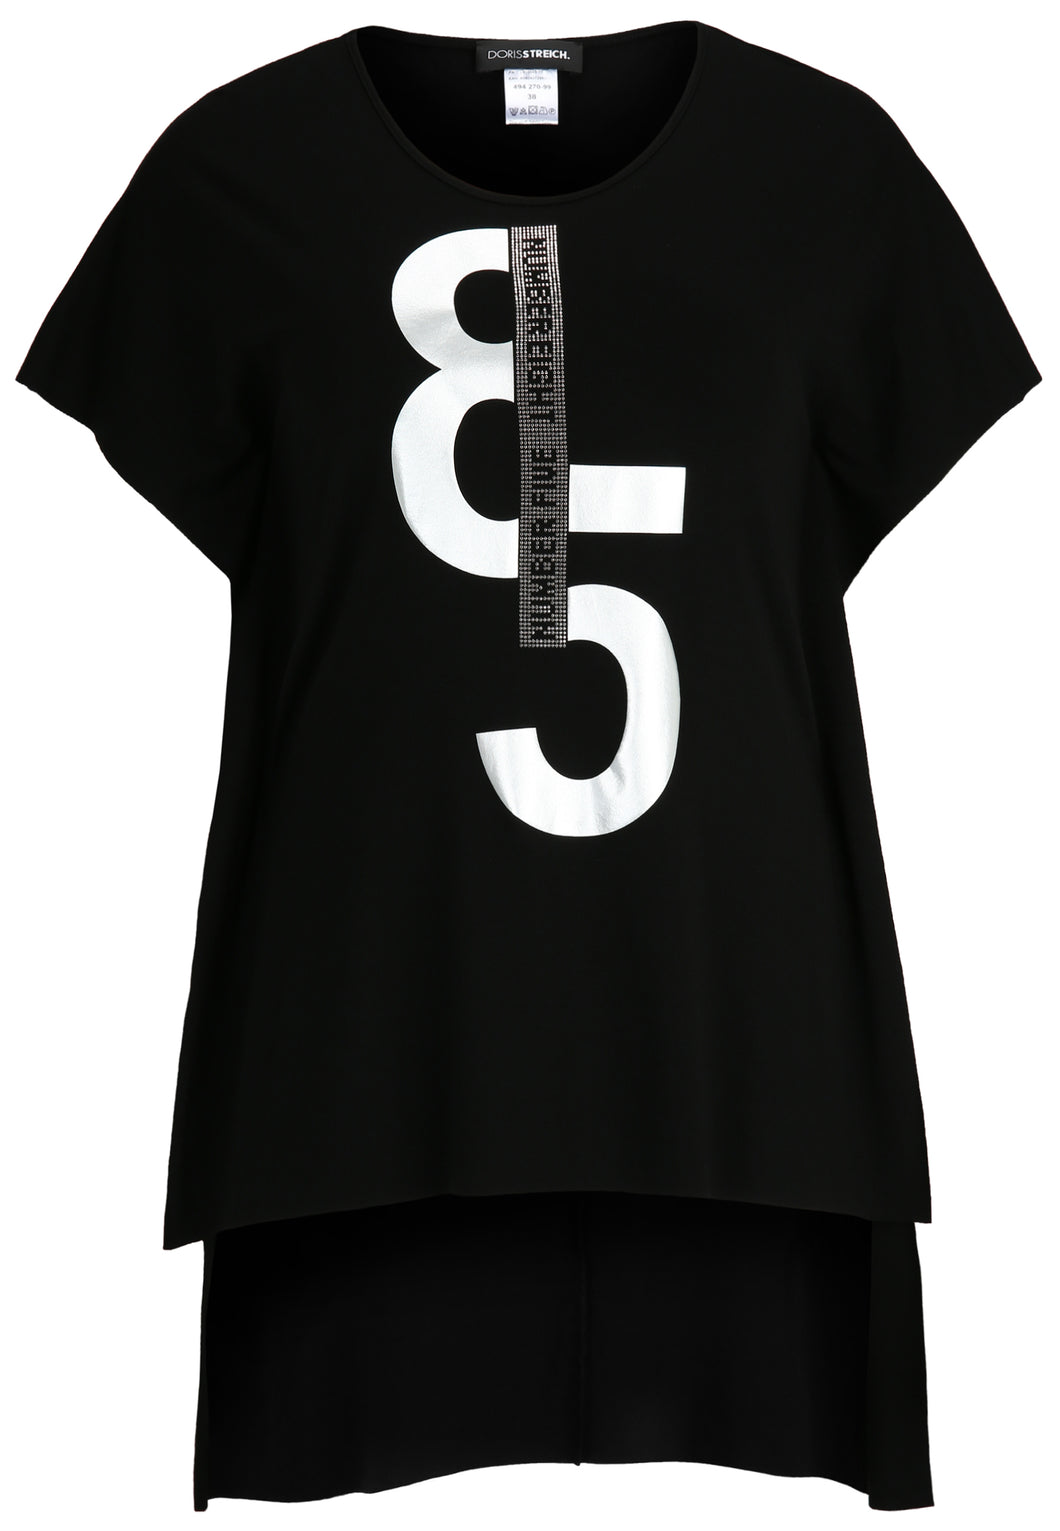 Doris Streich Long-Shirt oversized High-Low Style mit Strass-Steinchen